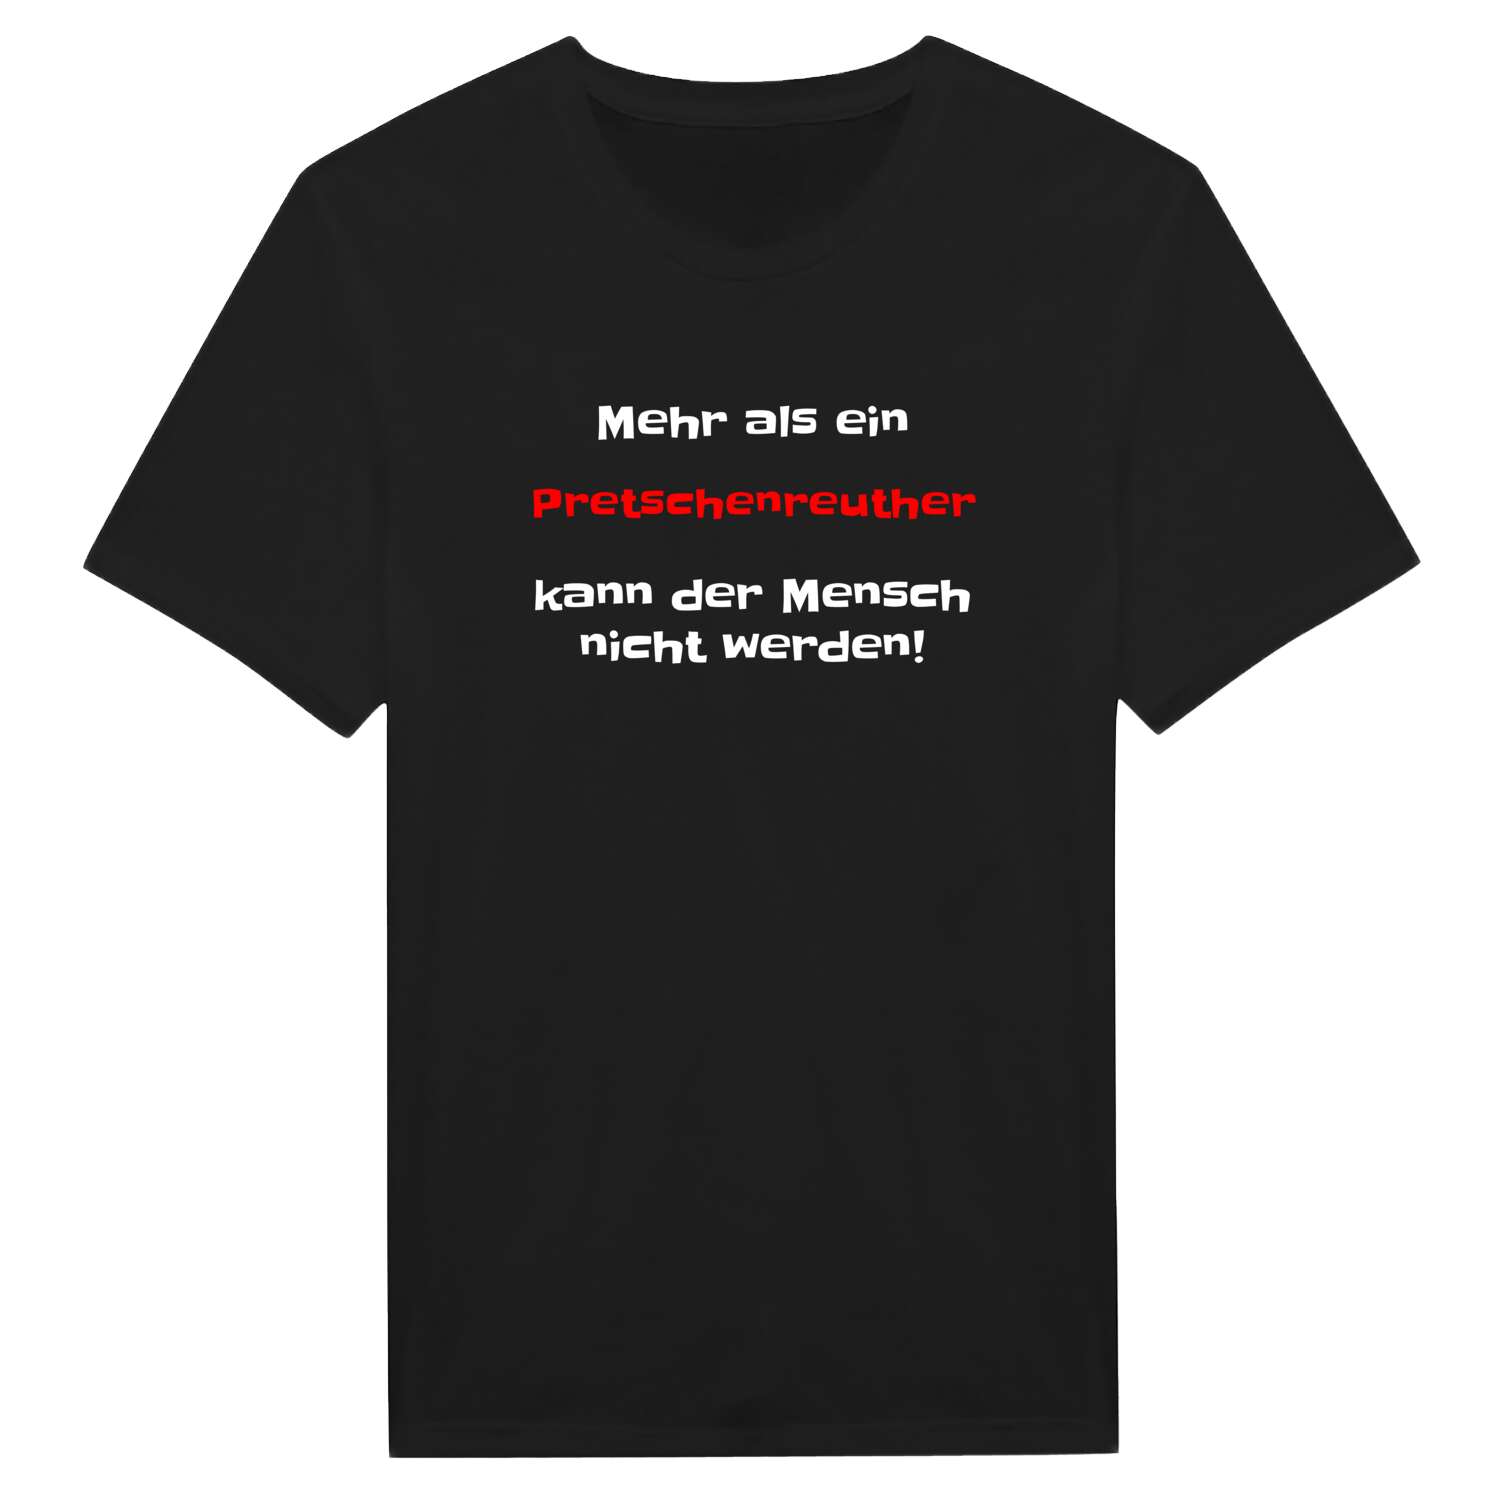 Pretschenreuth T-Shirt »Mehr als ein«